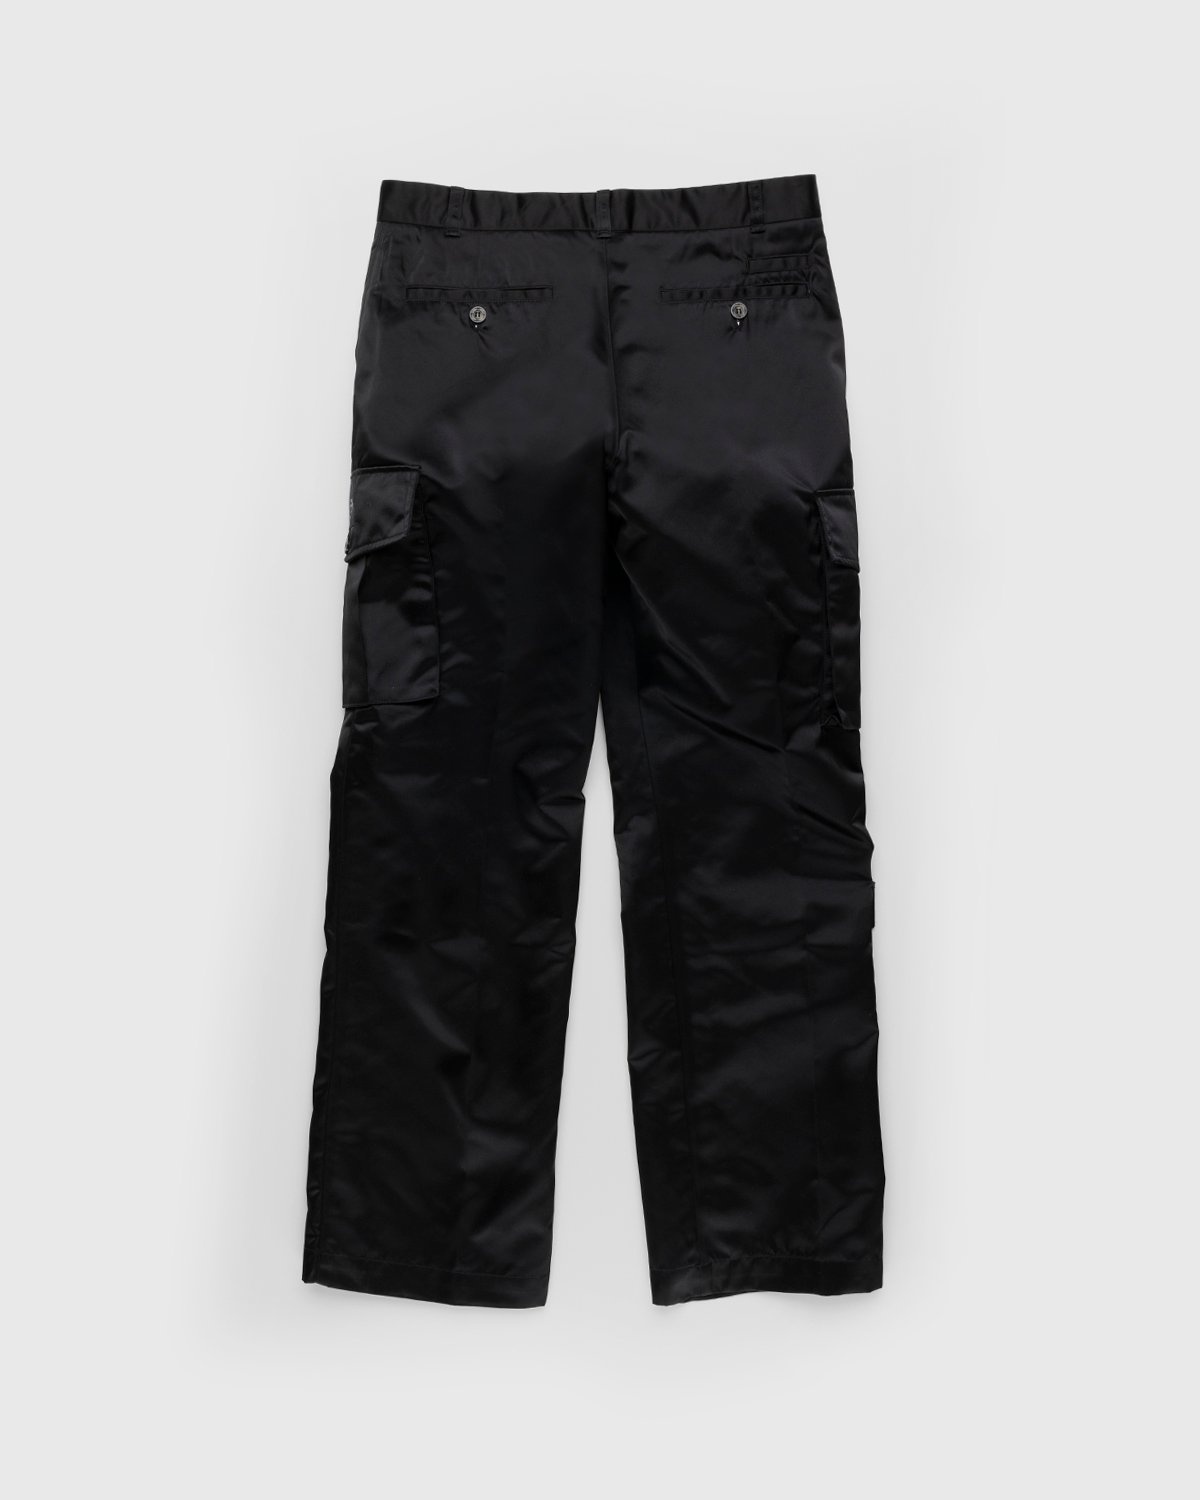 Phipps – Uniform Dad Pant Black - Pants - Black - Image 2